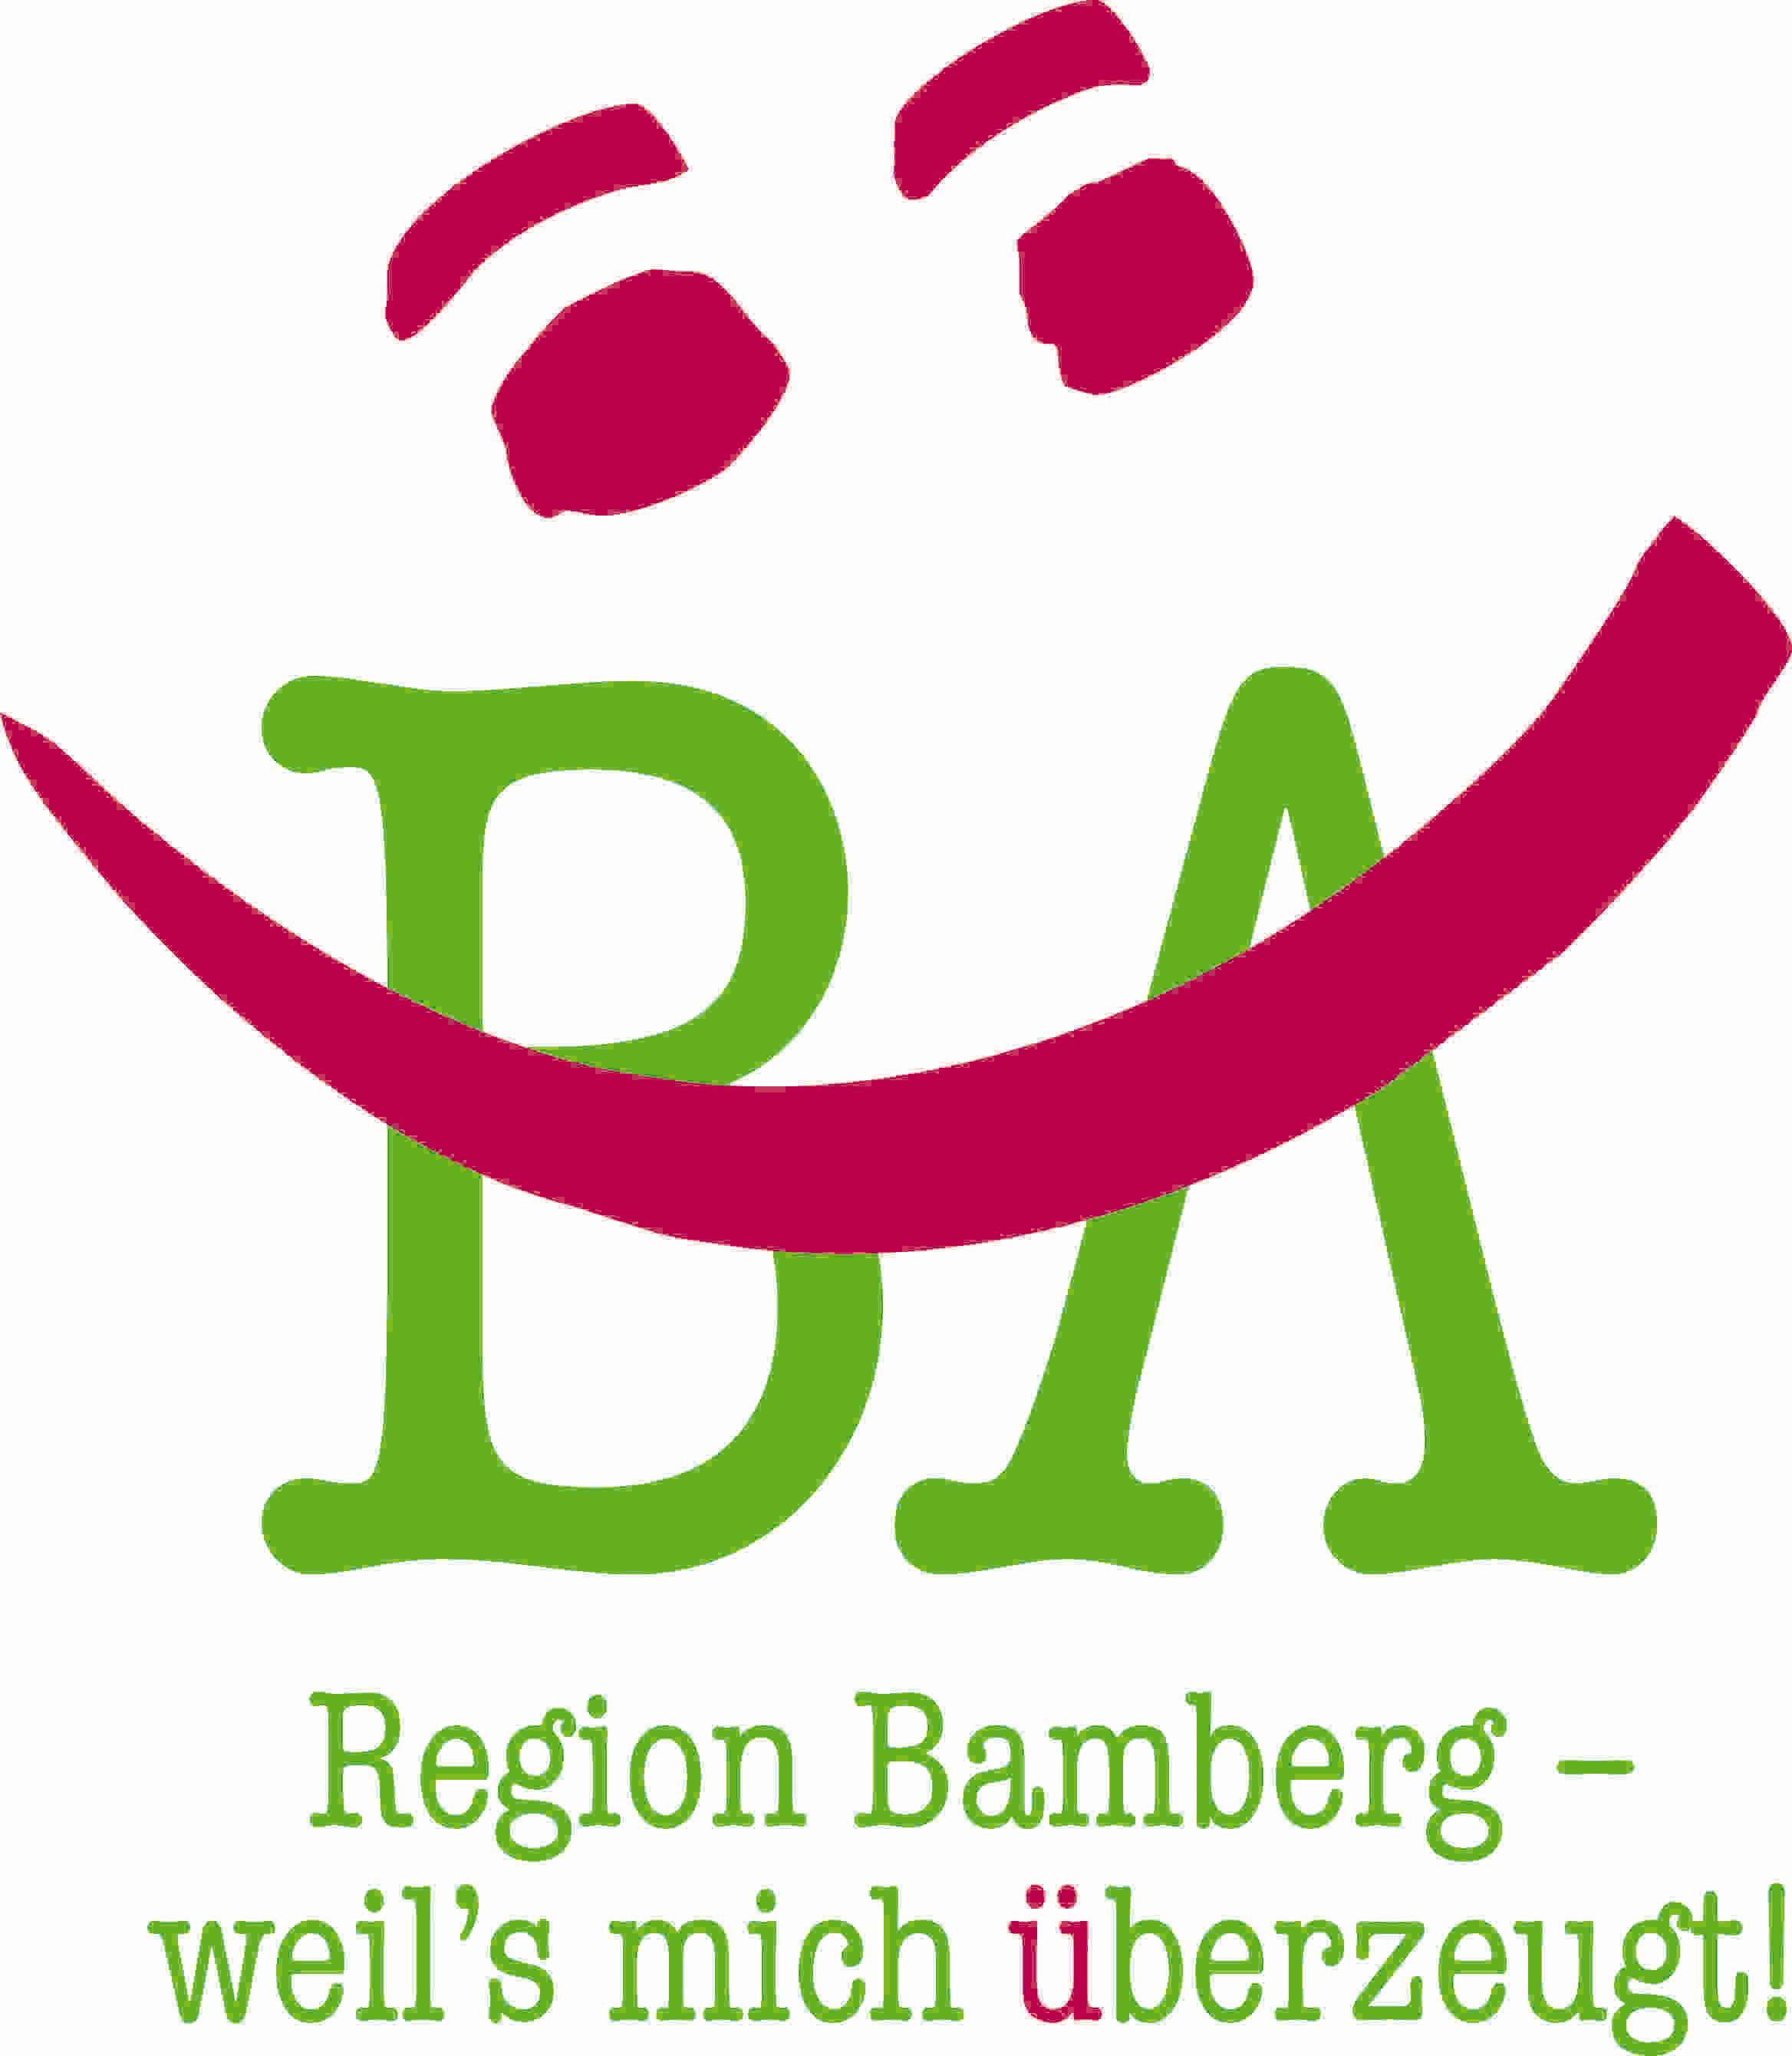 Region Bamberg Info